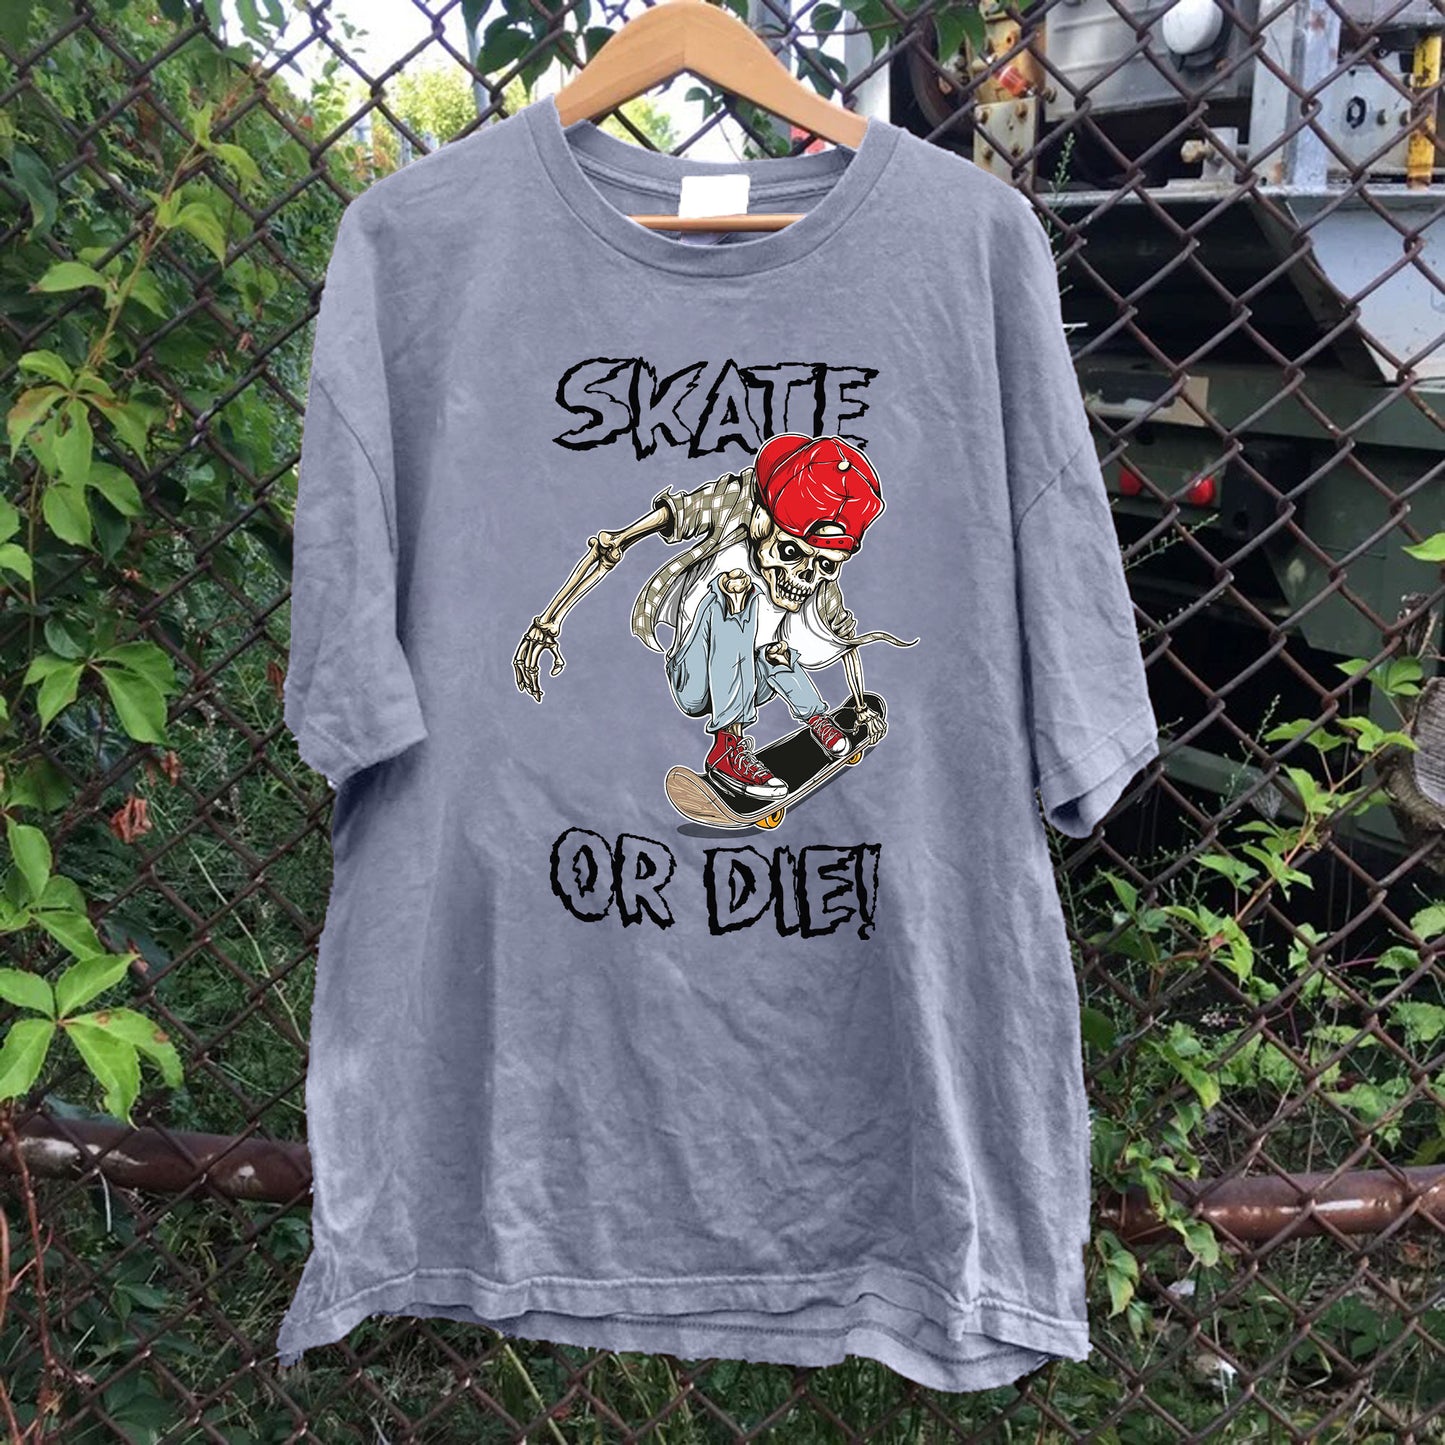 Skate Or Die! Skeleton Tee